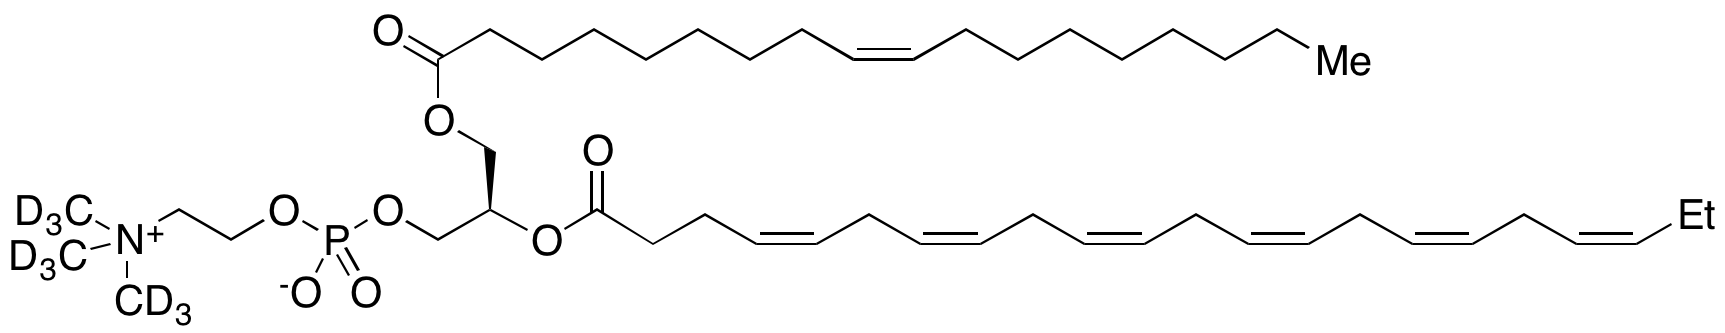 2-Docosahexaenoin-1-oleoyl 3-Phosphocholine-d<sub>9</sub>